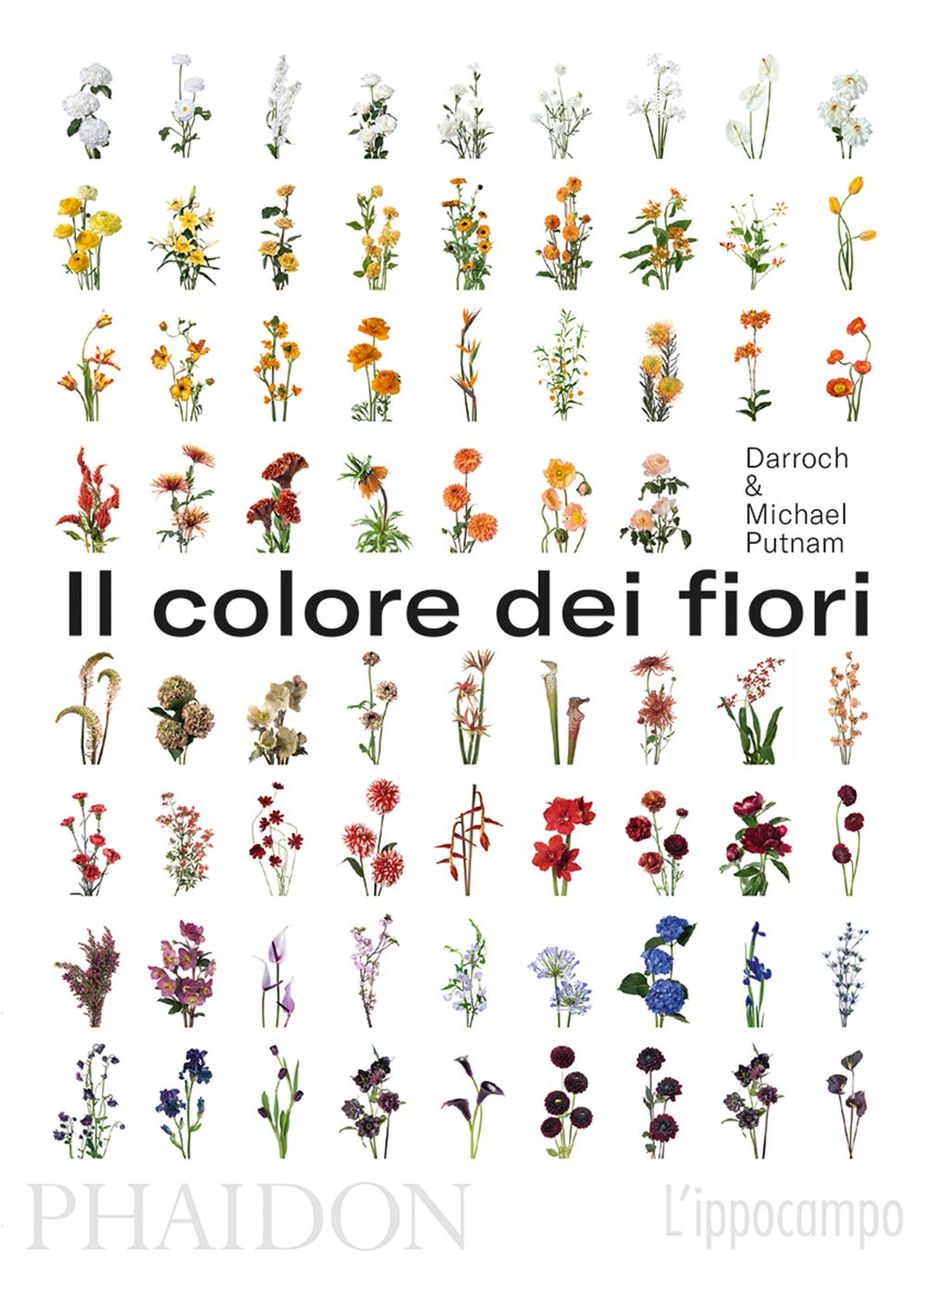 Darroch & Michael Putnam – Il colore dei fiori (Phaidon L'ippocampo, Londra Milano 2019)